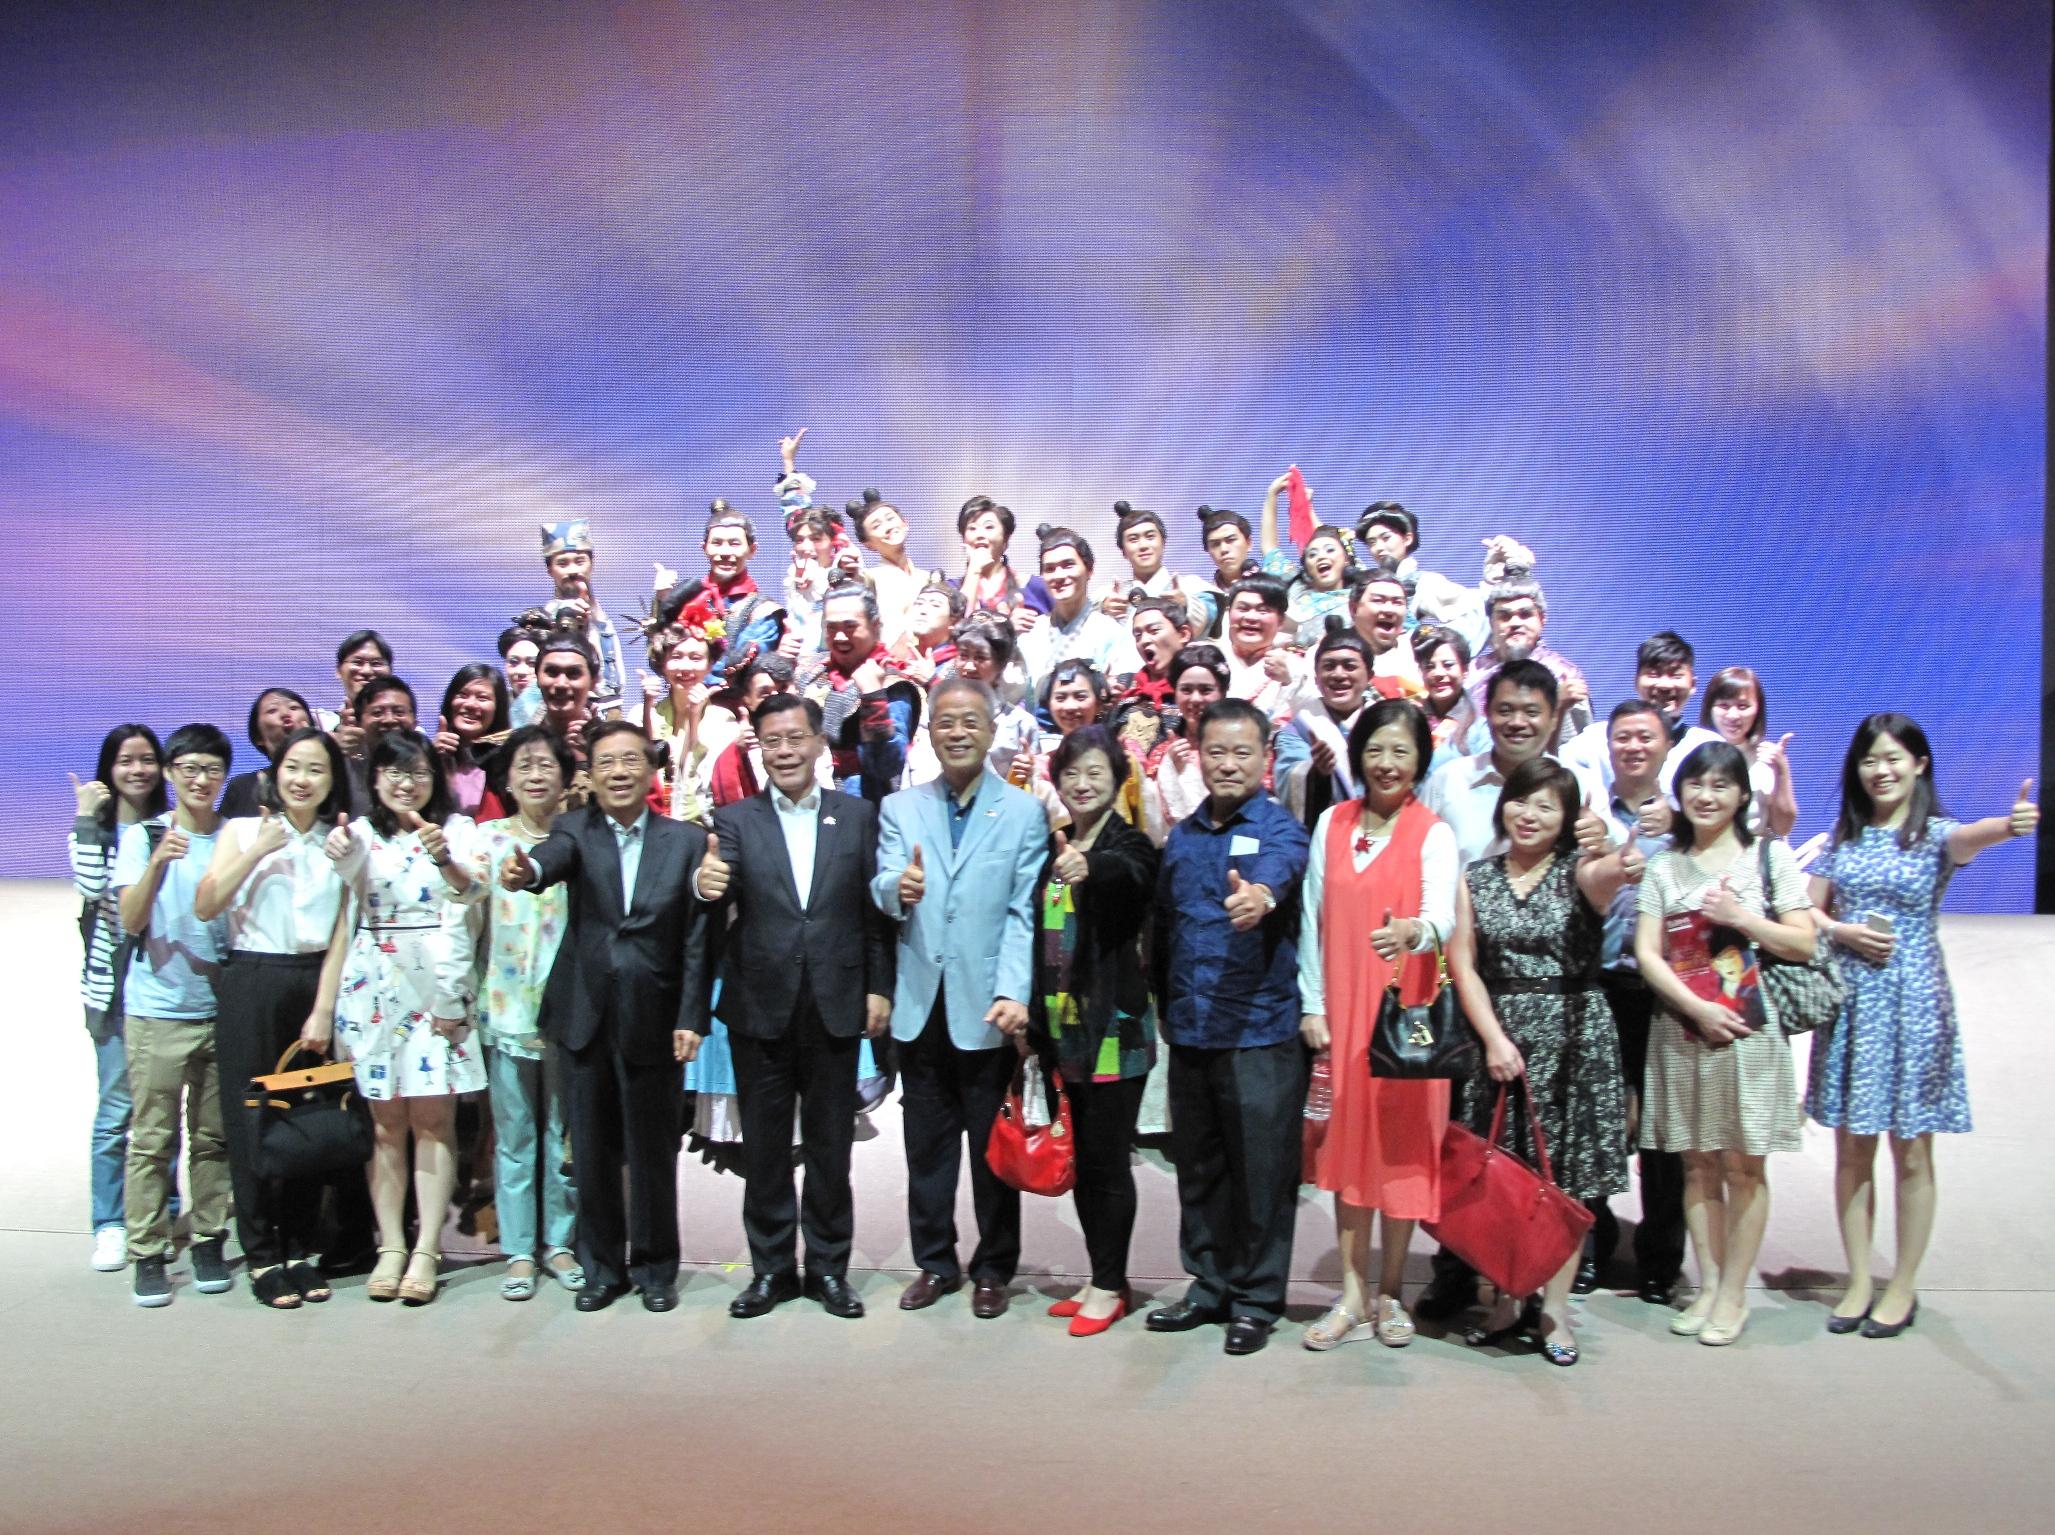 駐新加坡台北代表處梁國新代表(第一排左七)、旅星僑胞106年1月20日赴新加坡名勝世界劇場觀賞「木蘭少女」音樂劇演出後與演員合影。